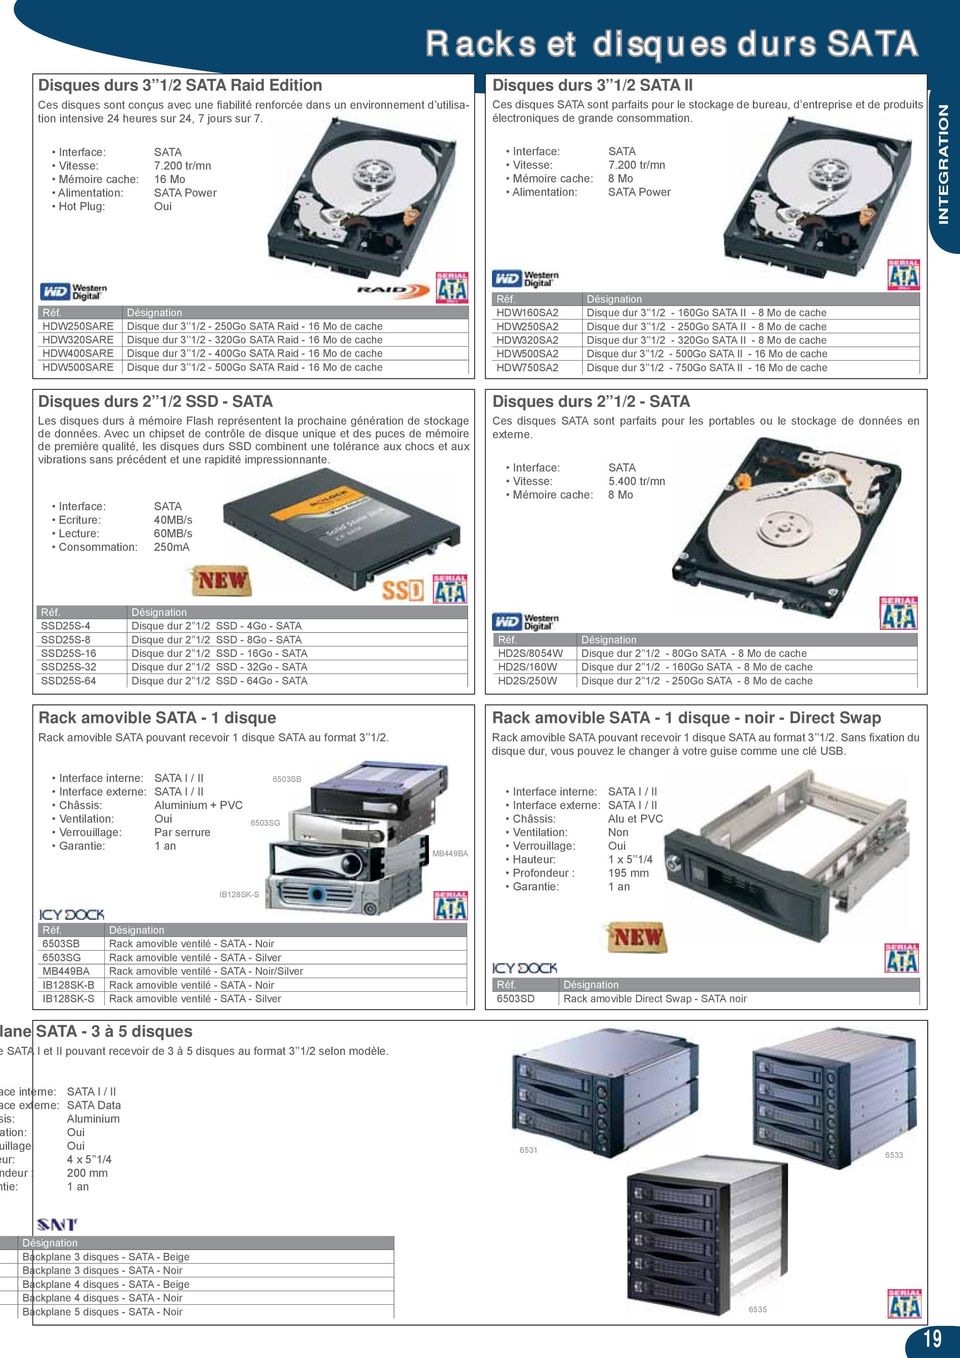 200 tr/mn 16 Mo SATA Power Oui Disques durs 3 1/2 SATA II Ces disques SATA sont parfaits pour le stockage de bureau, d entreprise et de produits électroniques de grande consommation.